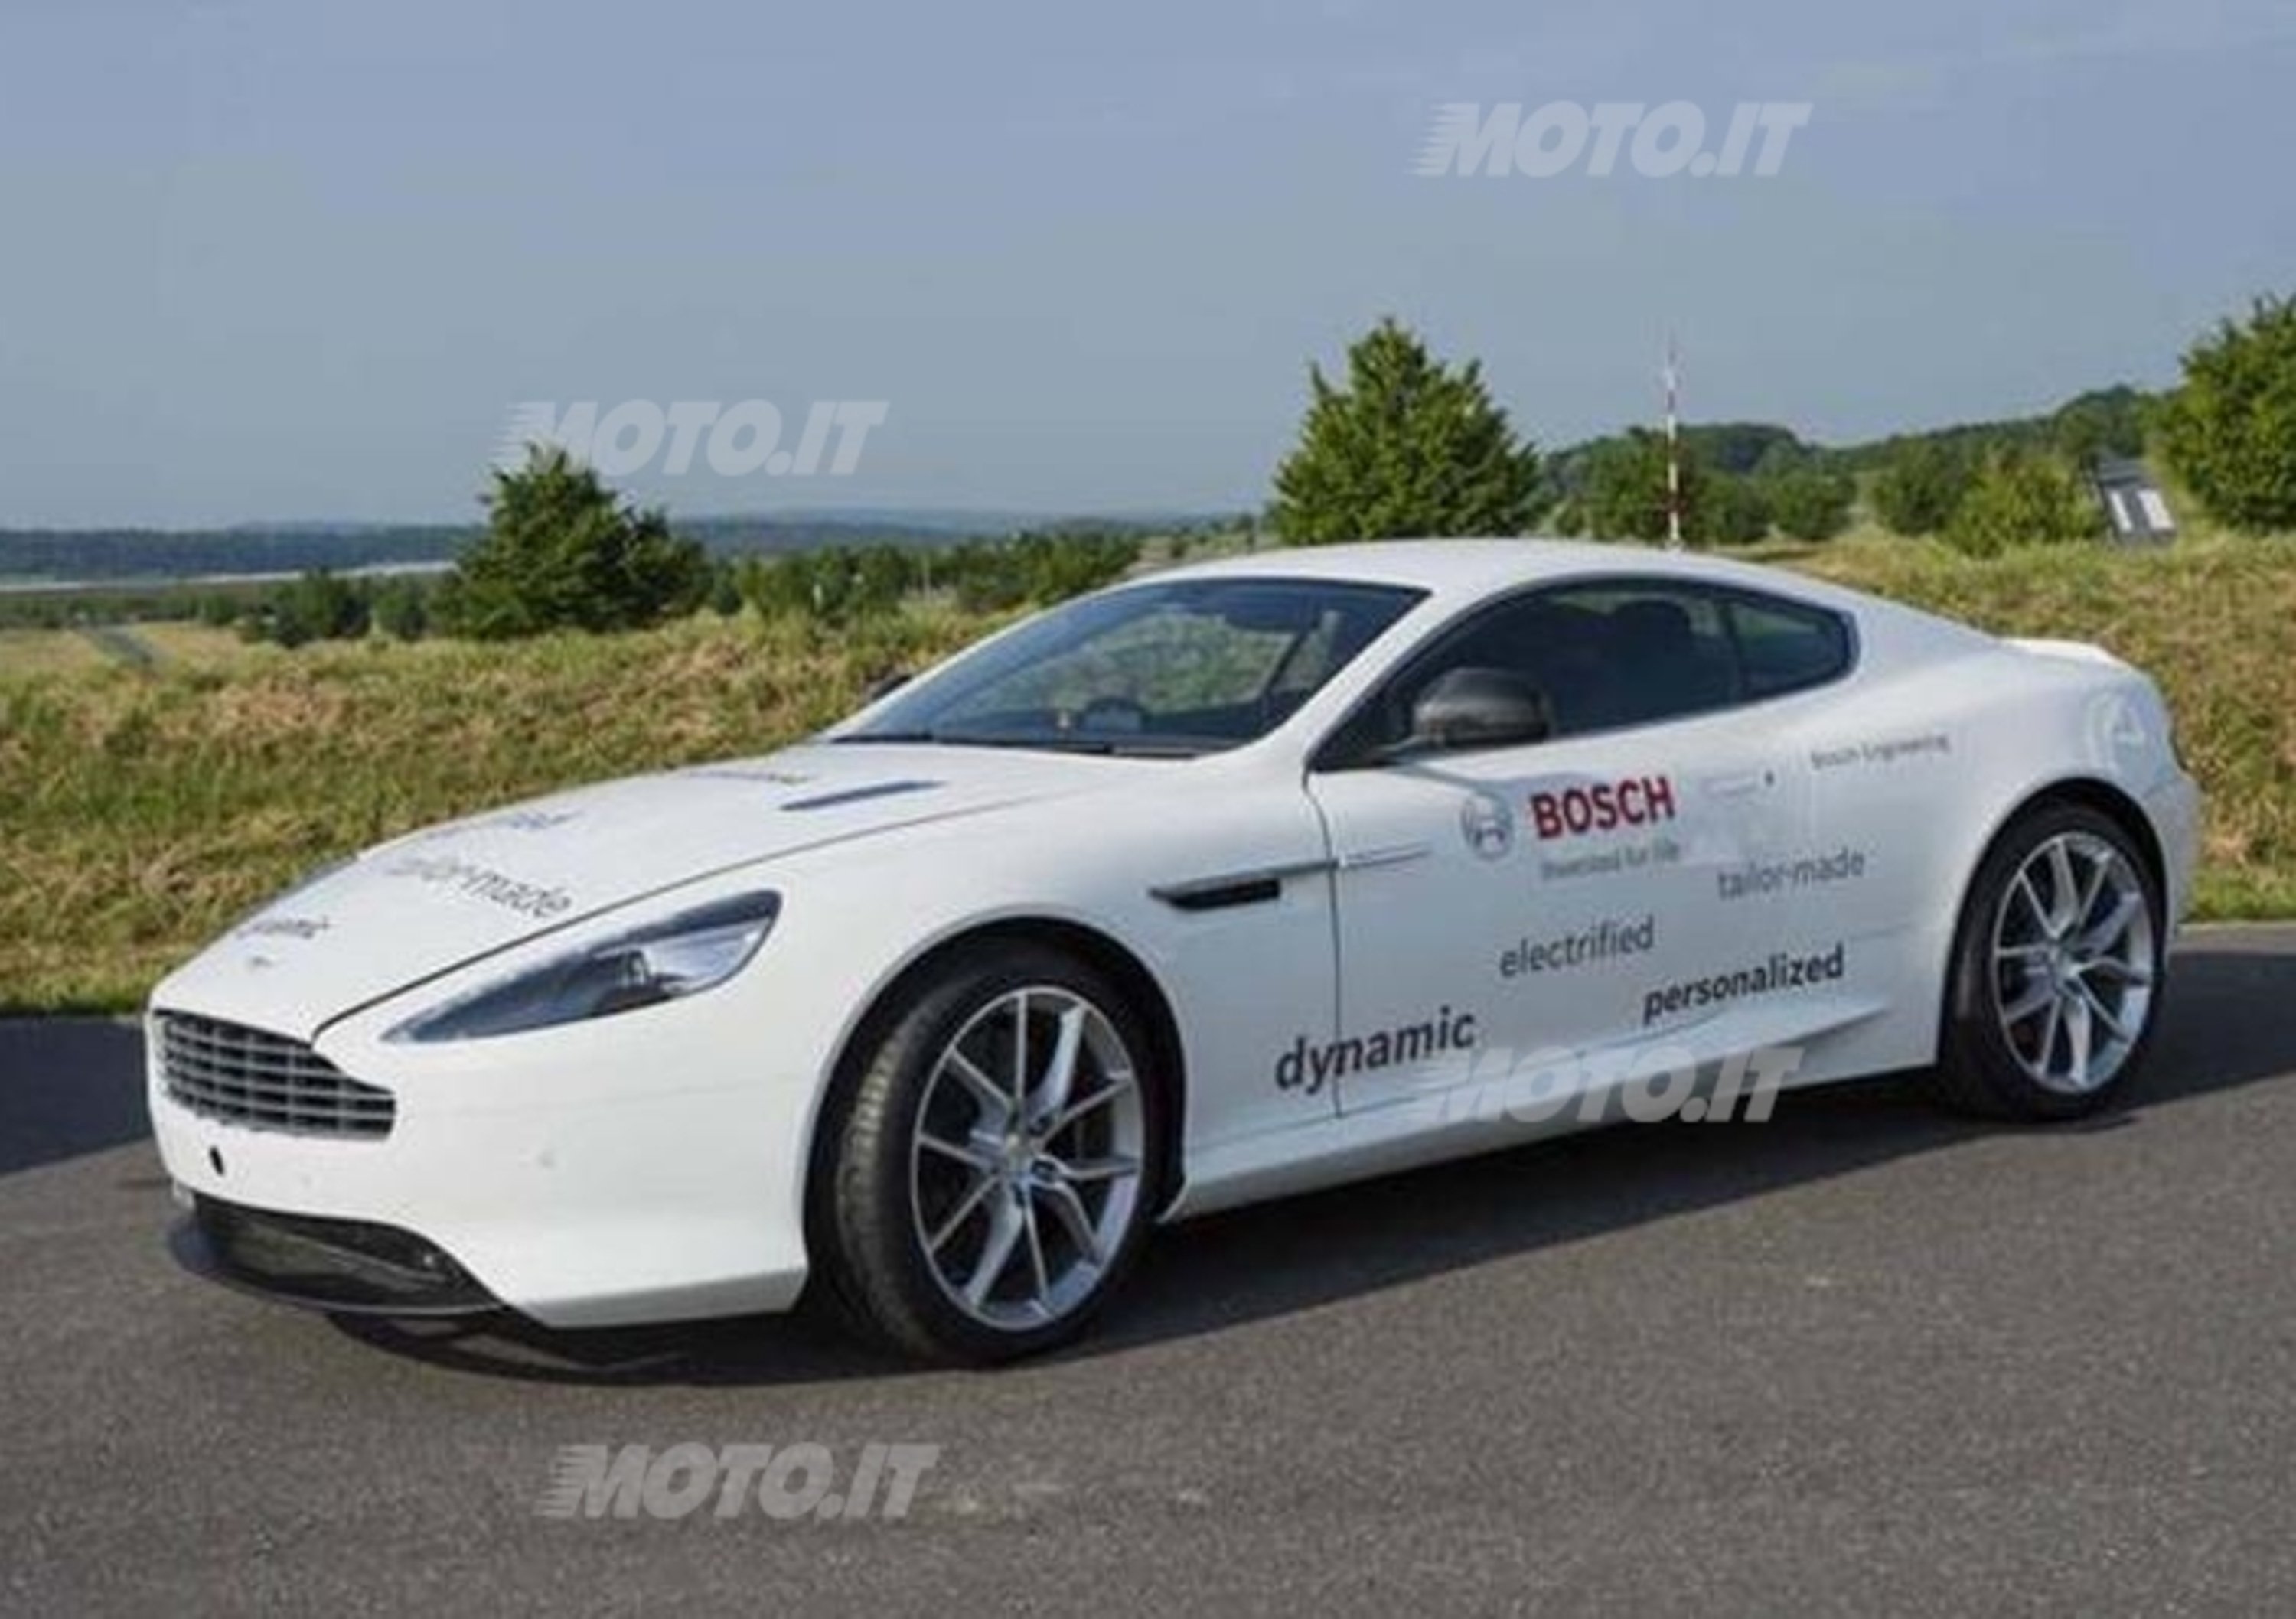 Aston Martin DB9: nasce una versione ibrida plug-in con Bosch